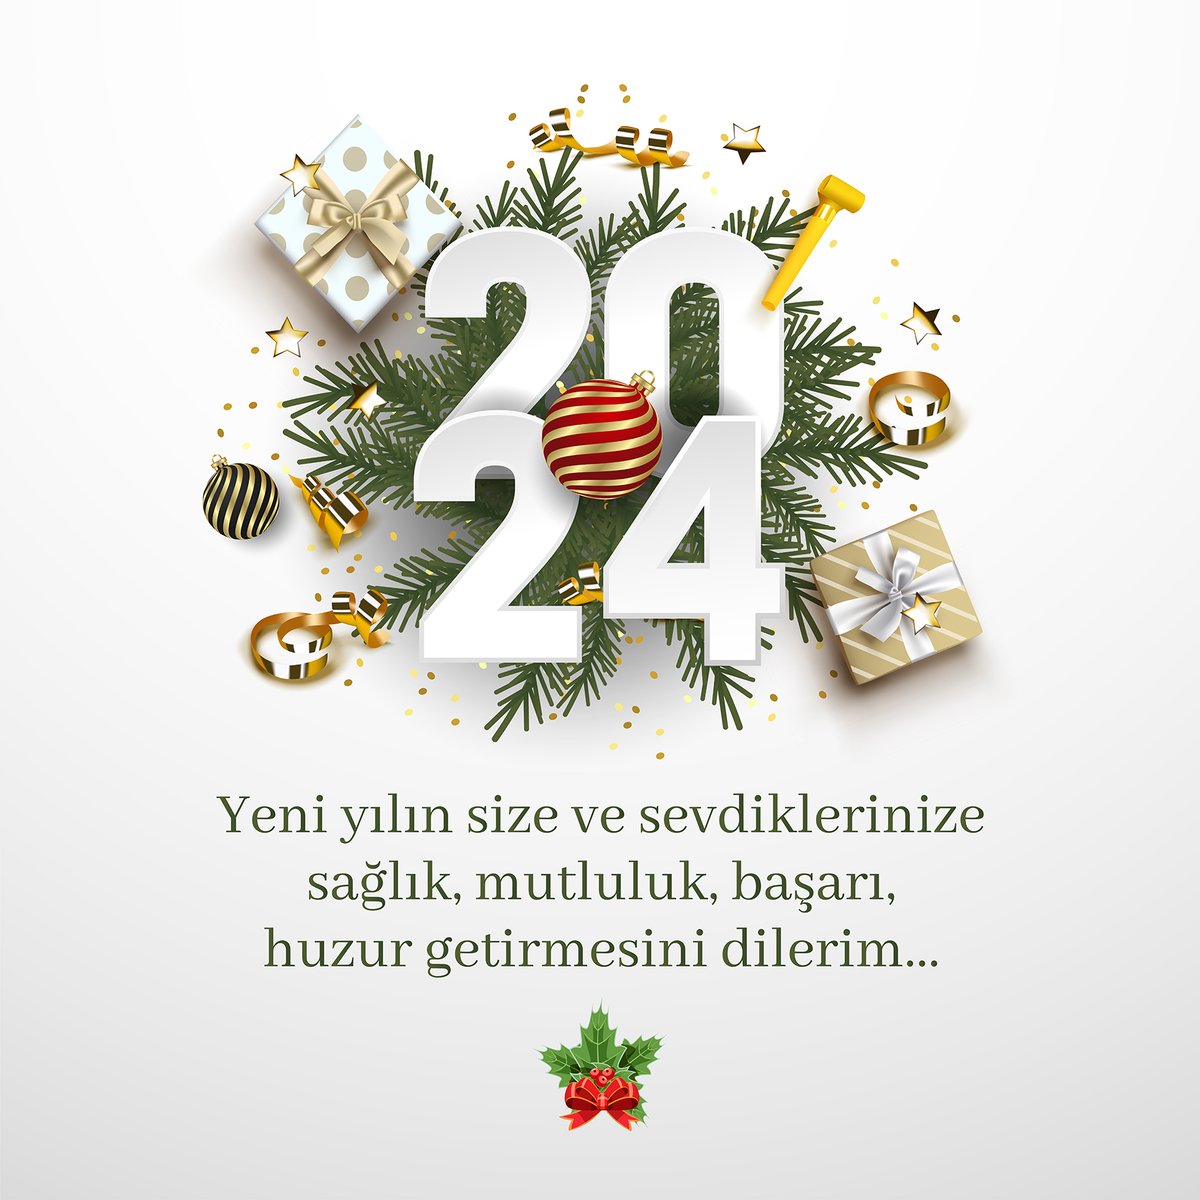 Mutlu Yıllar ☃️

#gülegüle2023 
#2024yılı 
#Hoşgeldin2024 
#iyiseneler
#günaydın 
#istanbul
#pazar
#yılbasi